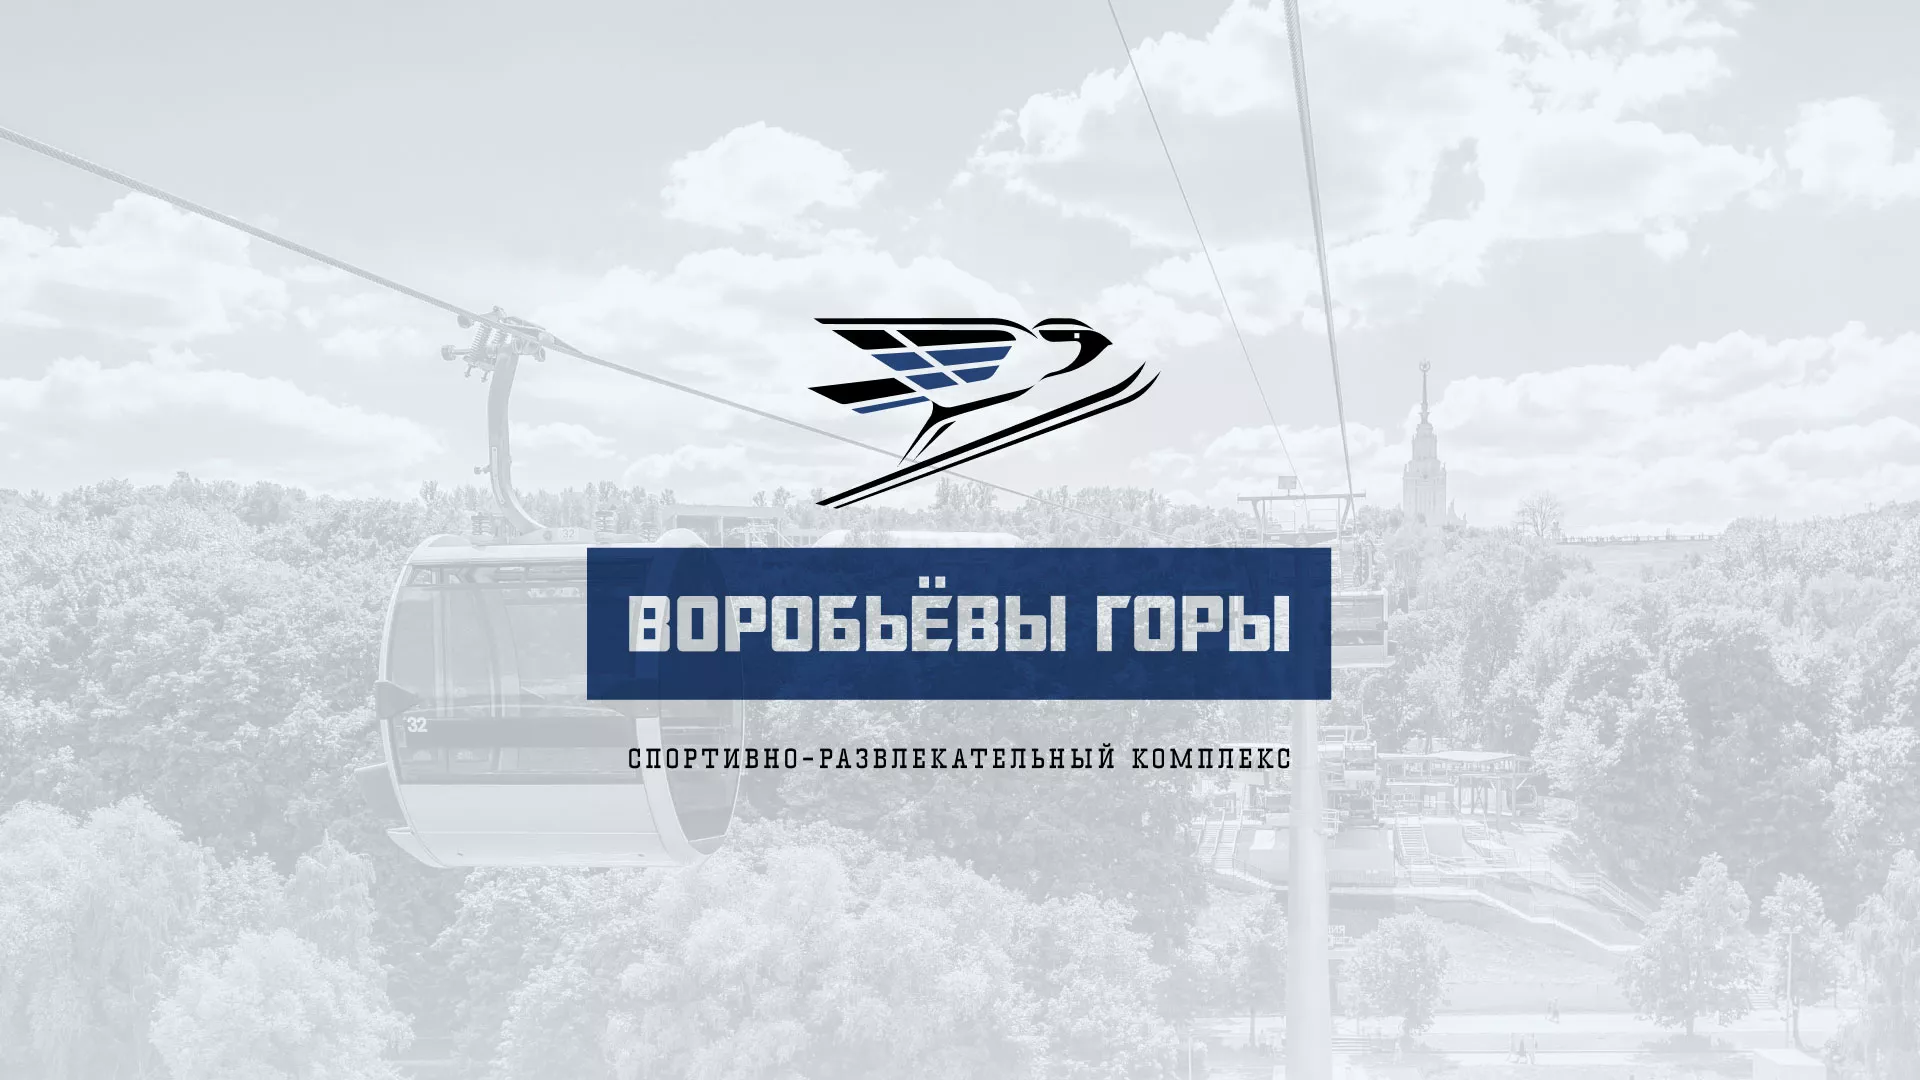 Разработка сайта в Беломорске для спортивно-развлекательного комплекса «Воробьёвы горы»